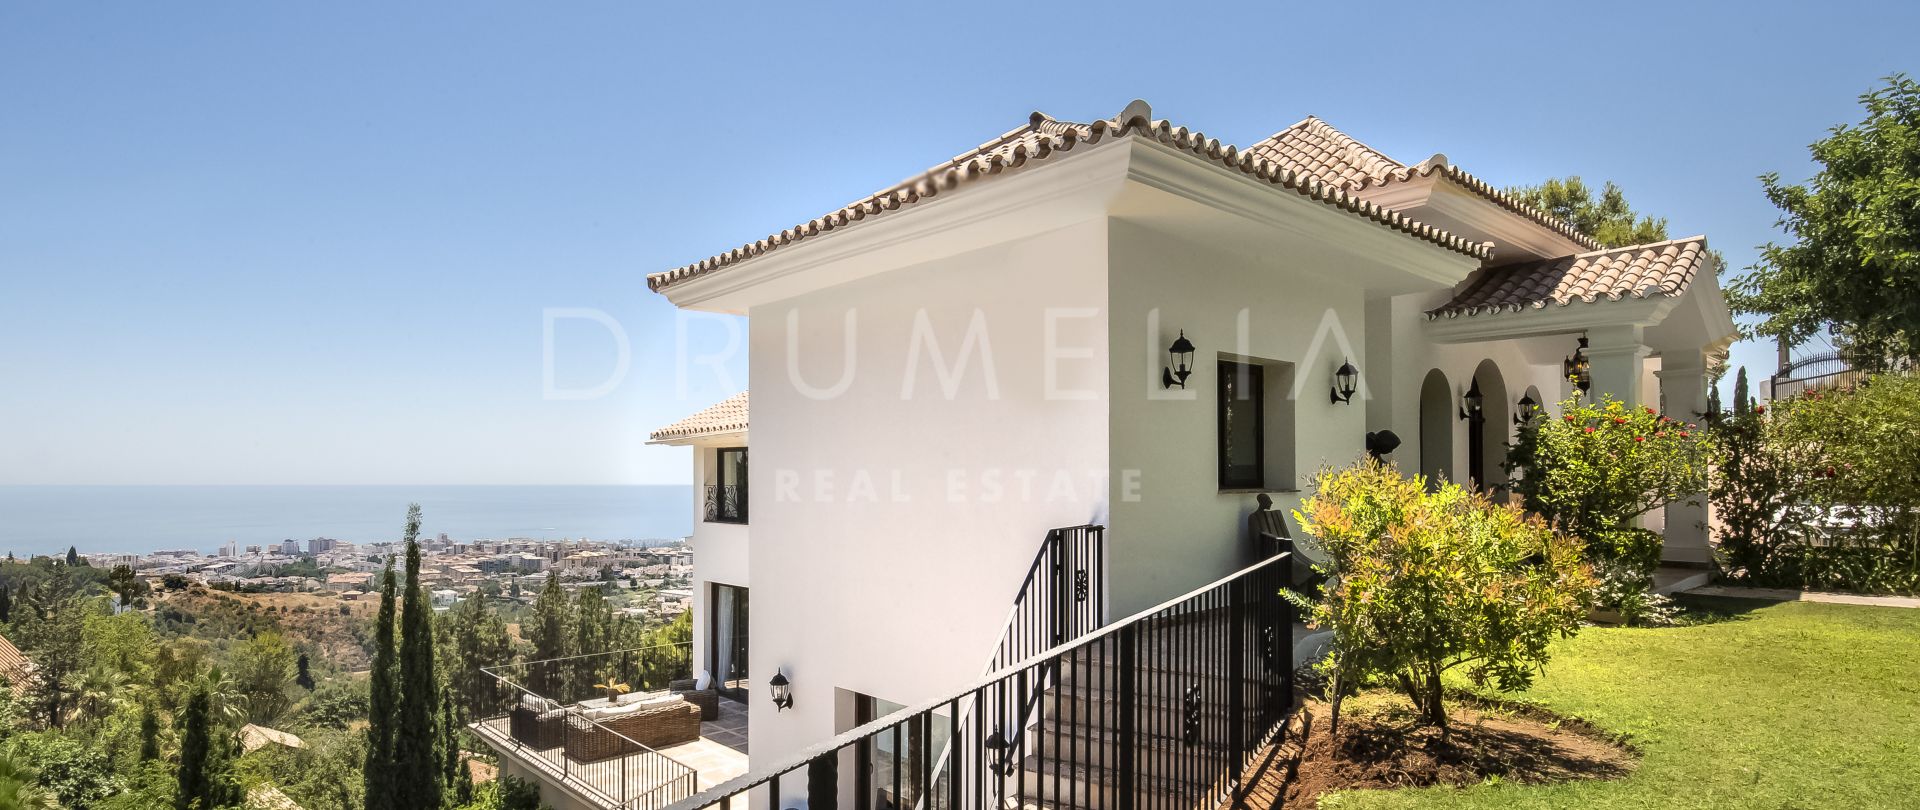 Villa for salg i La Montua, Marbella by